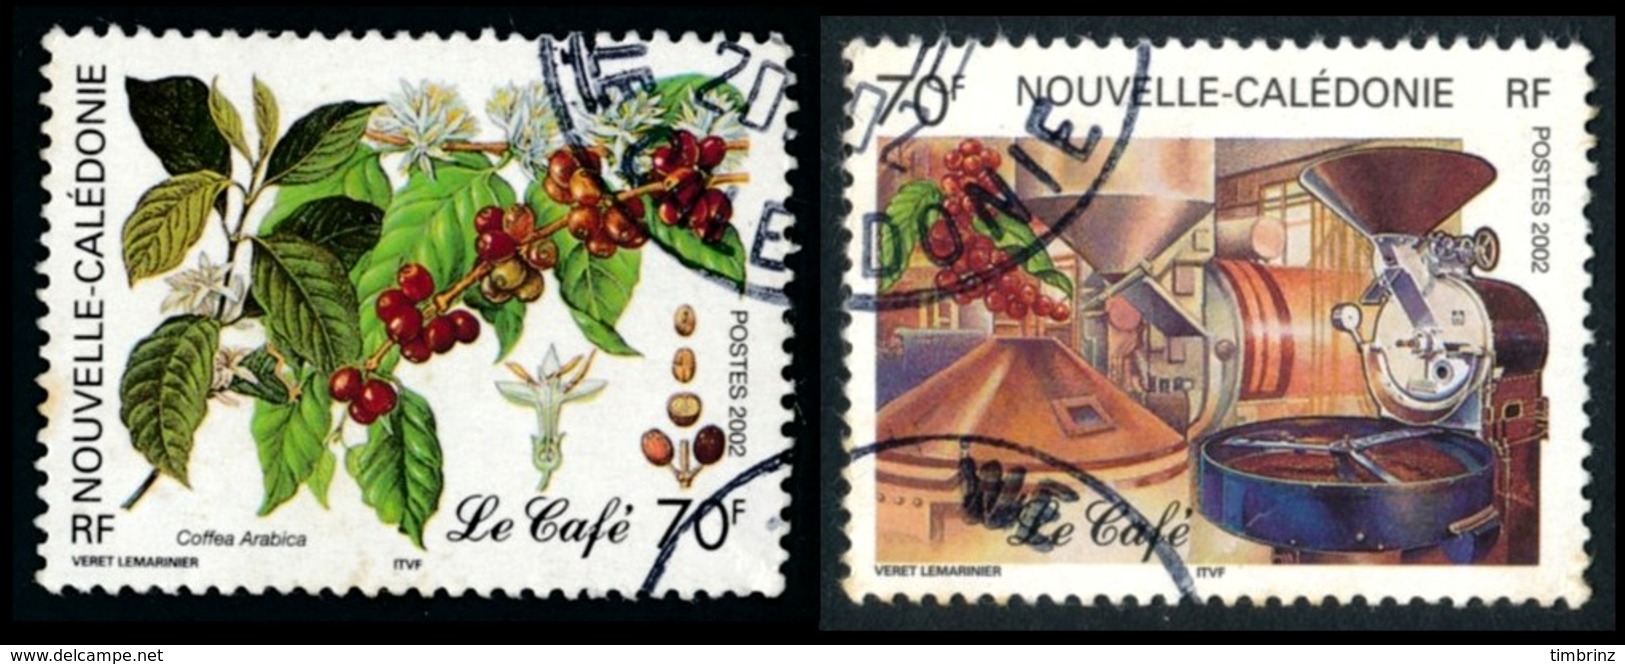 NOUV.-CALEDONIE 2002 - Yv. 869 Et 870 Obl.   Cote= 2,40 EUR - Caféier & Usine, Torréfacteur (2 Val.)  ..Réf.NCE24540 - Usati